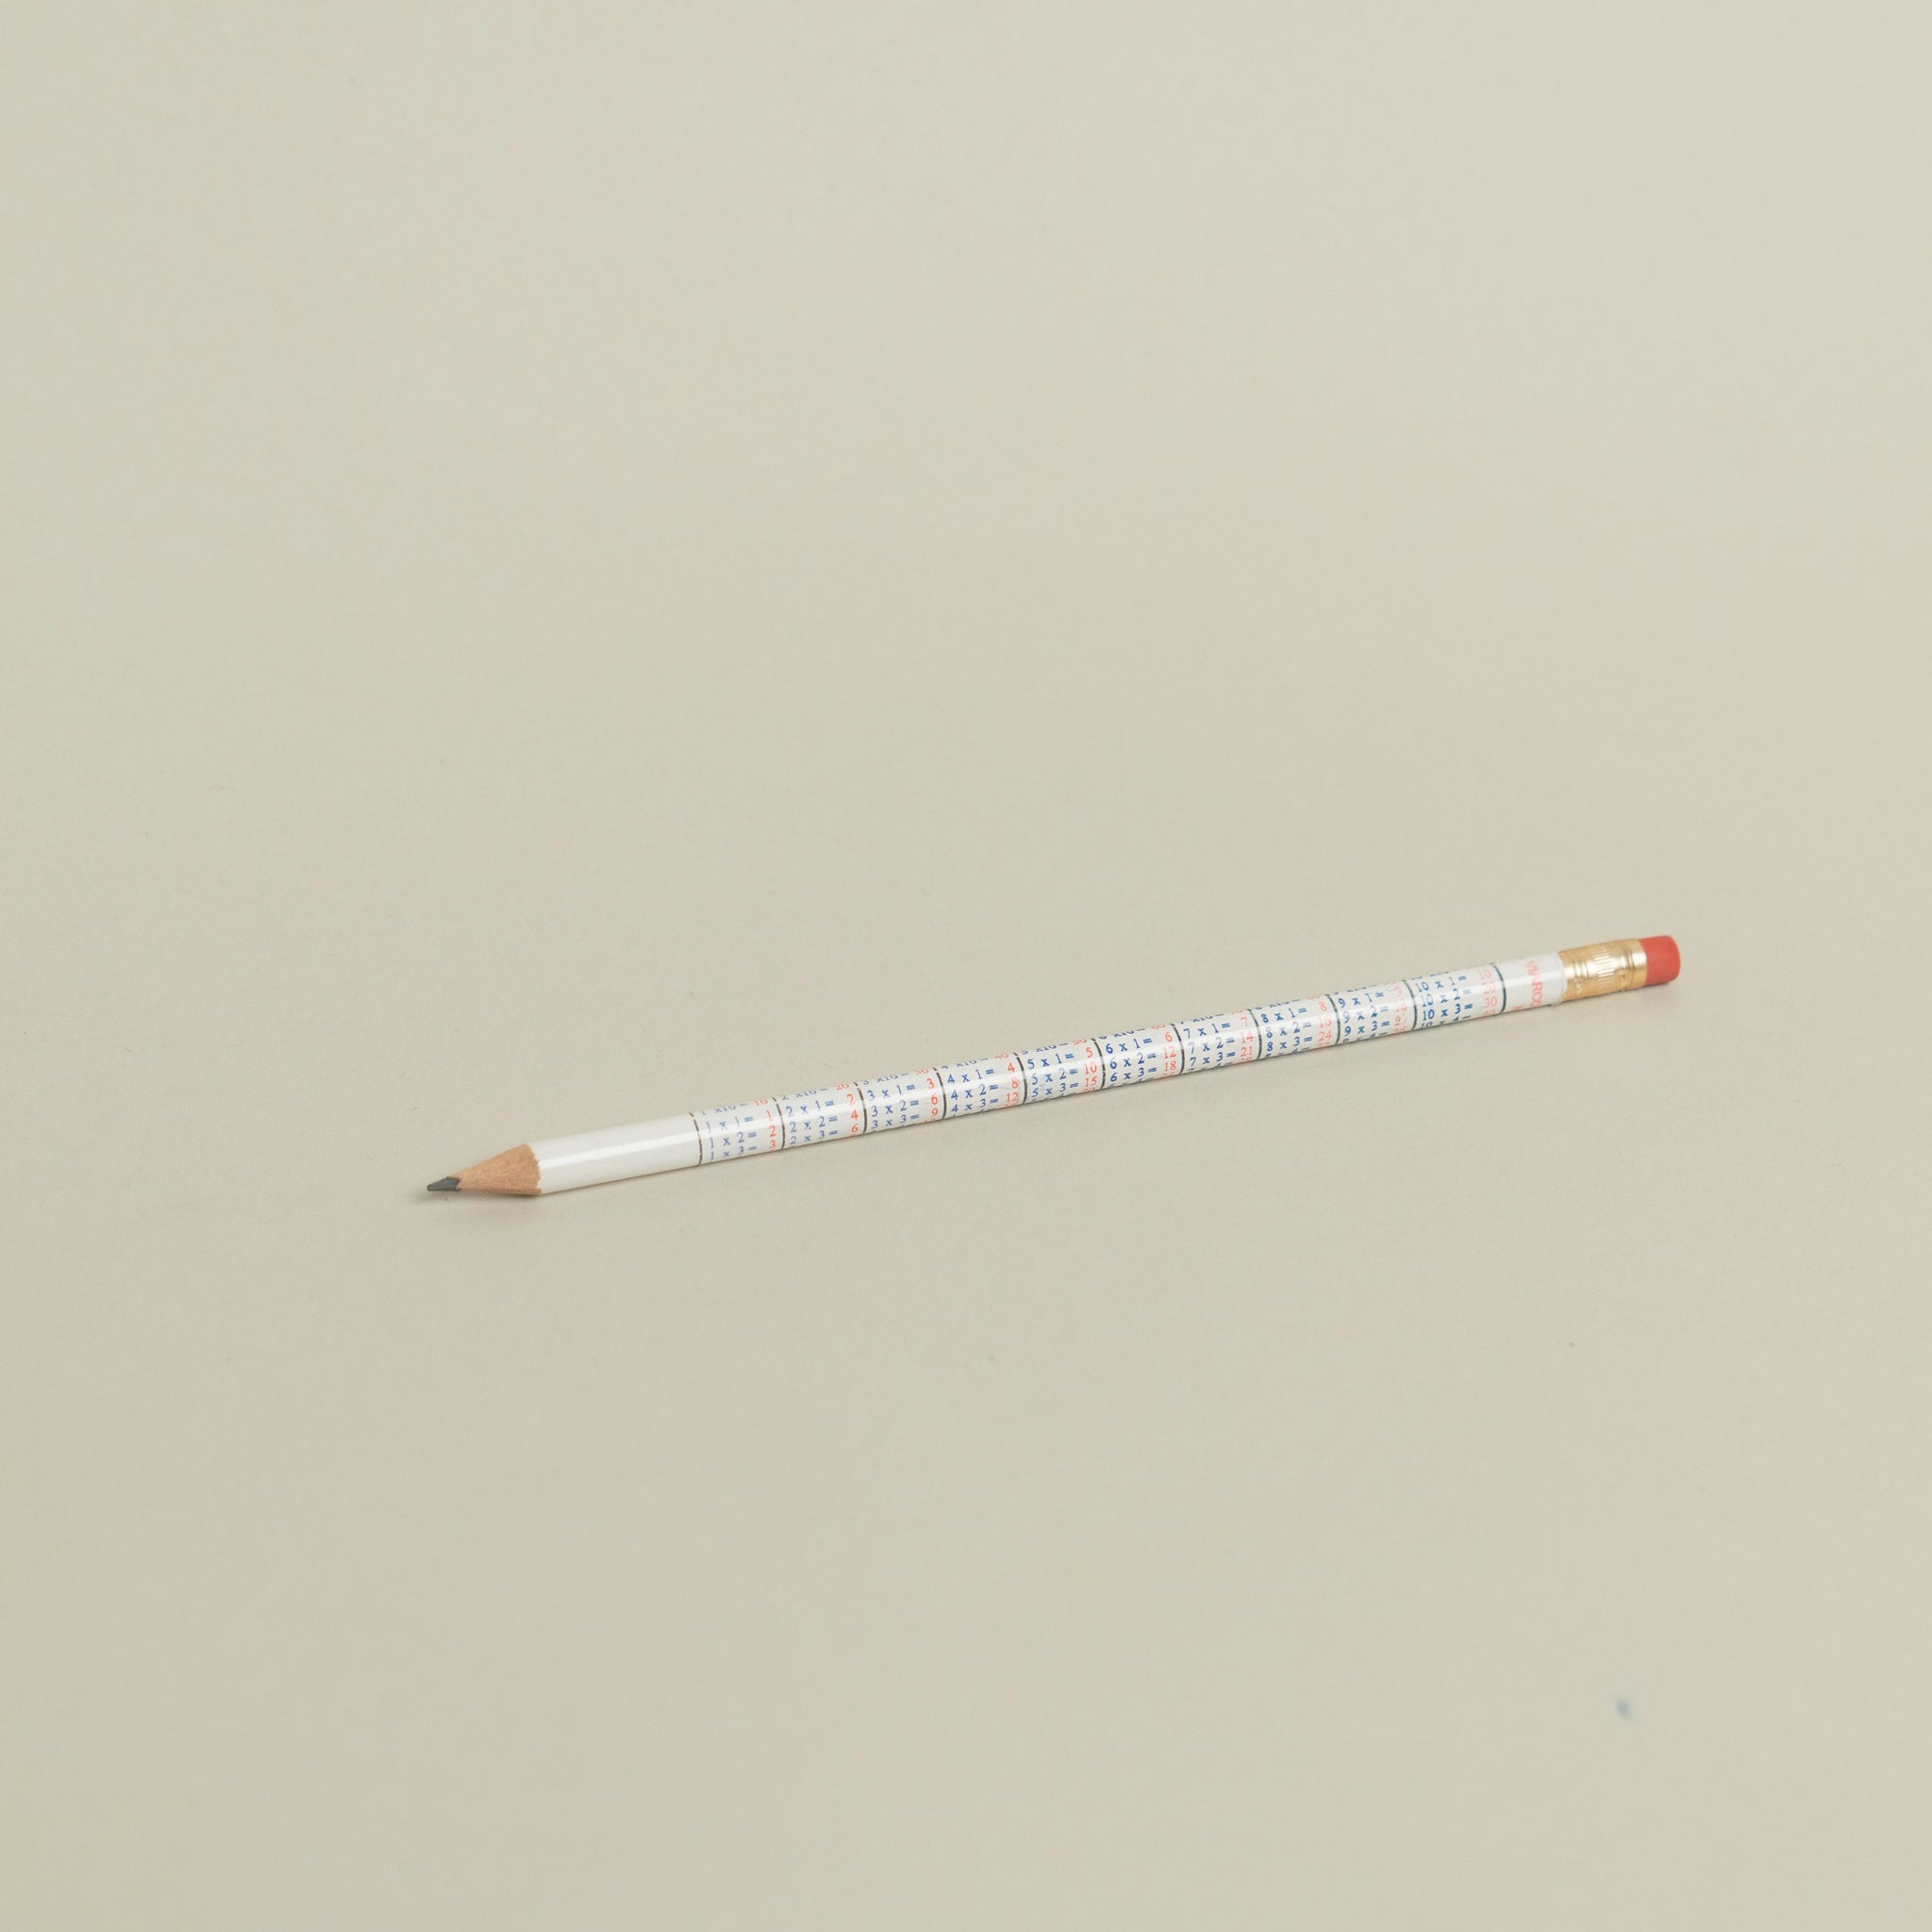 Multiplier Pencil